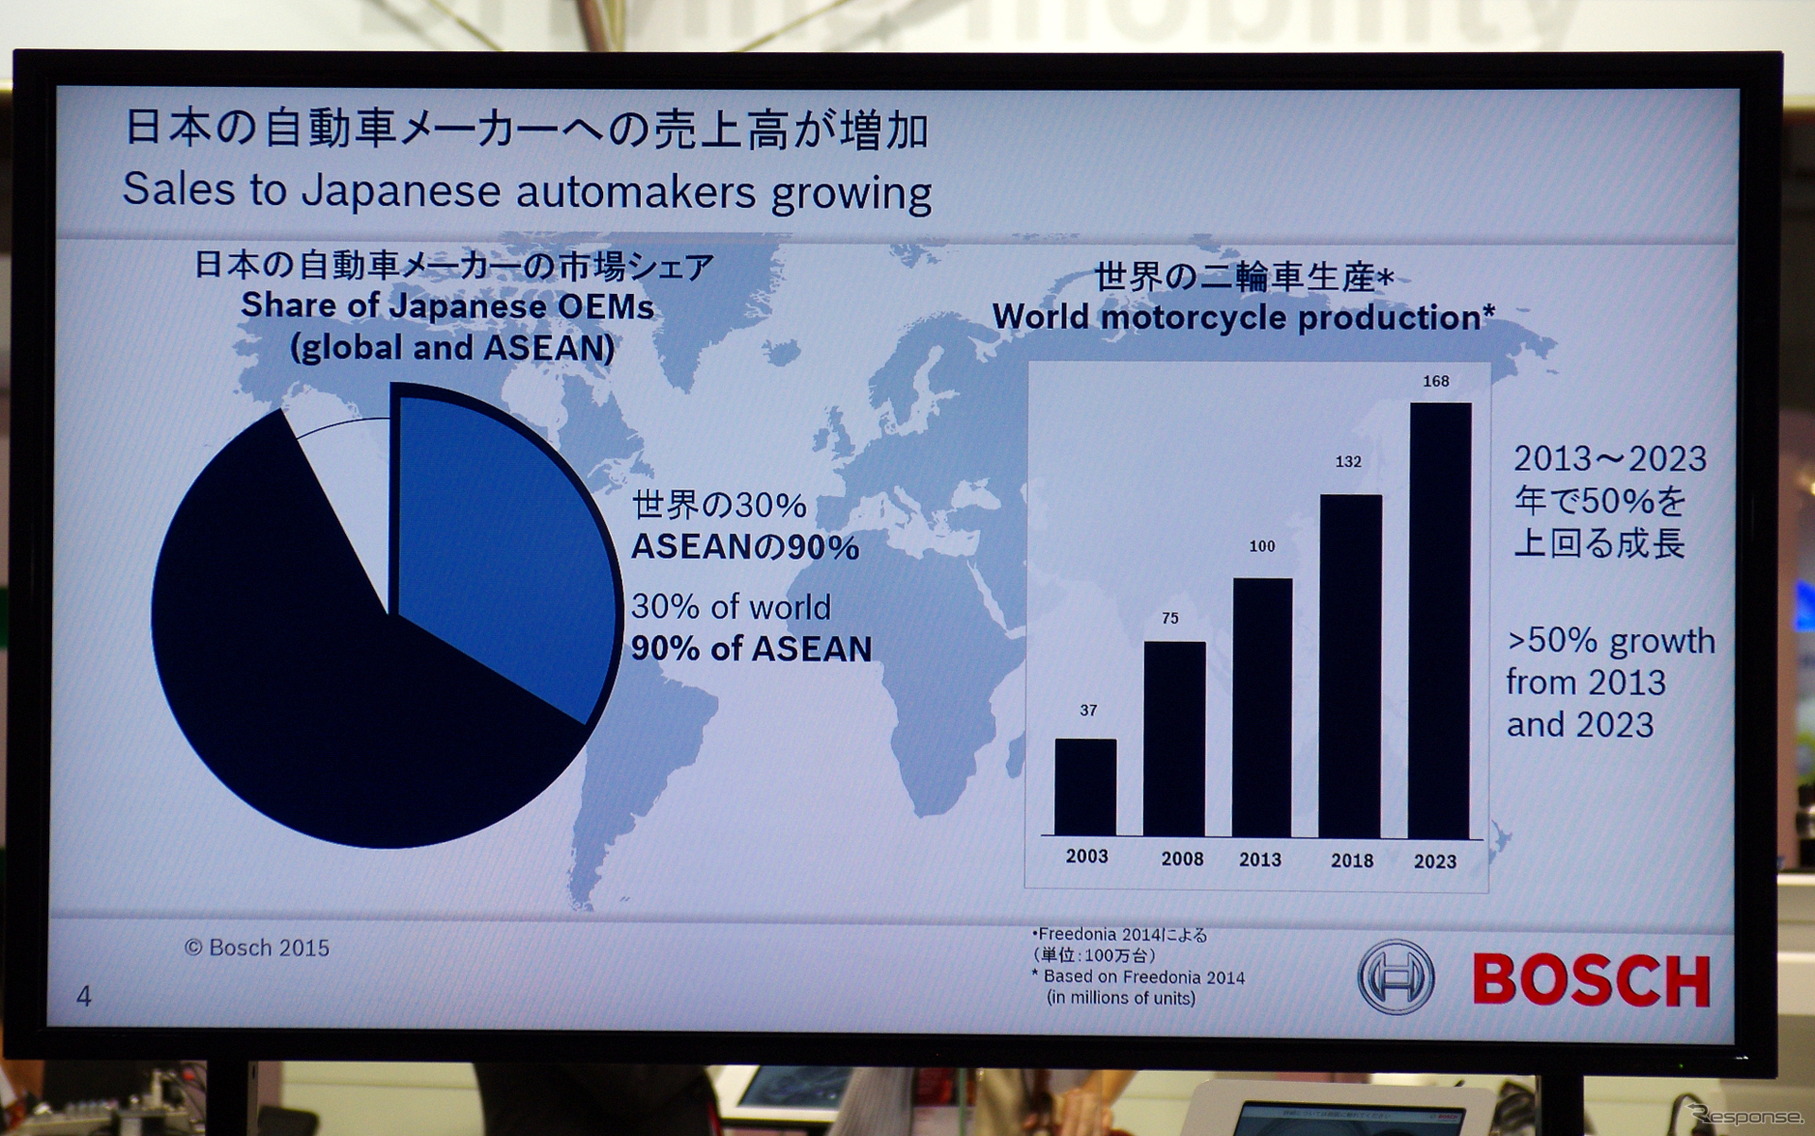 【インタビュー】日本の自動車メーカーとのビジネスは順調に推移…ボッシュ役員